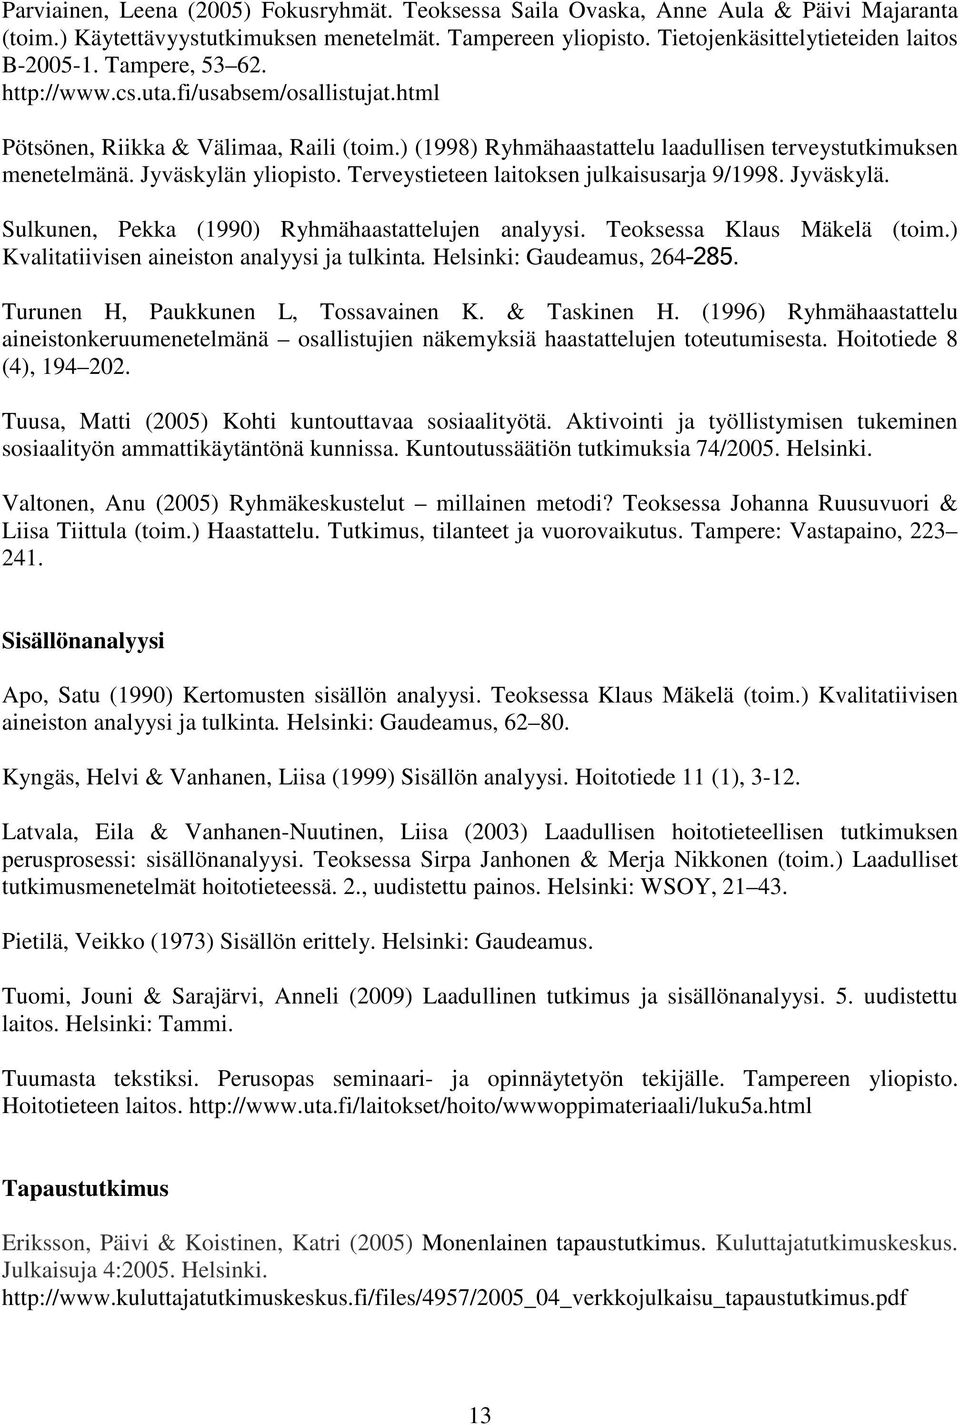 Terveystieteen laitoksen julkaisusarja 9/1998. Jyväskylä. Sulkunen, Pekka (1990) Ryhmähaastattelujen analyysi. Teoksessa Klaus Mäkelä (toim.) Kvalitatiivisen aineiston analyysi ja tulkinta.